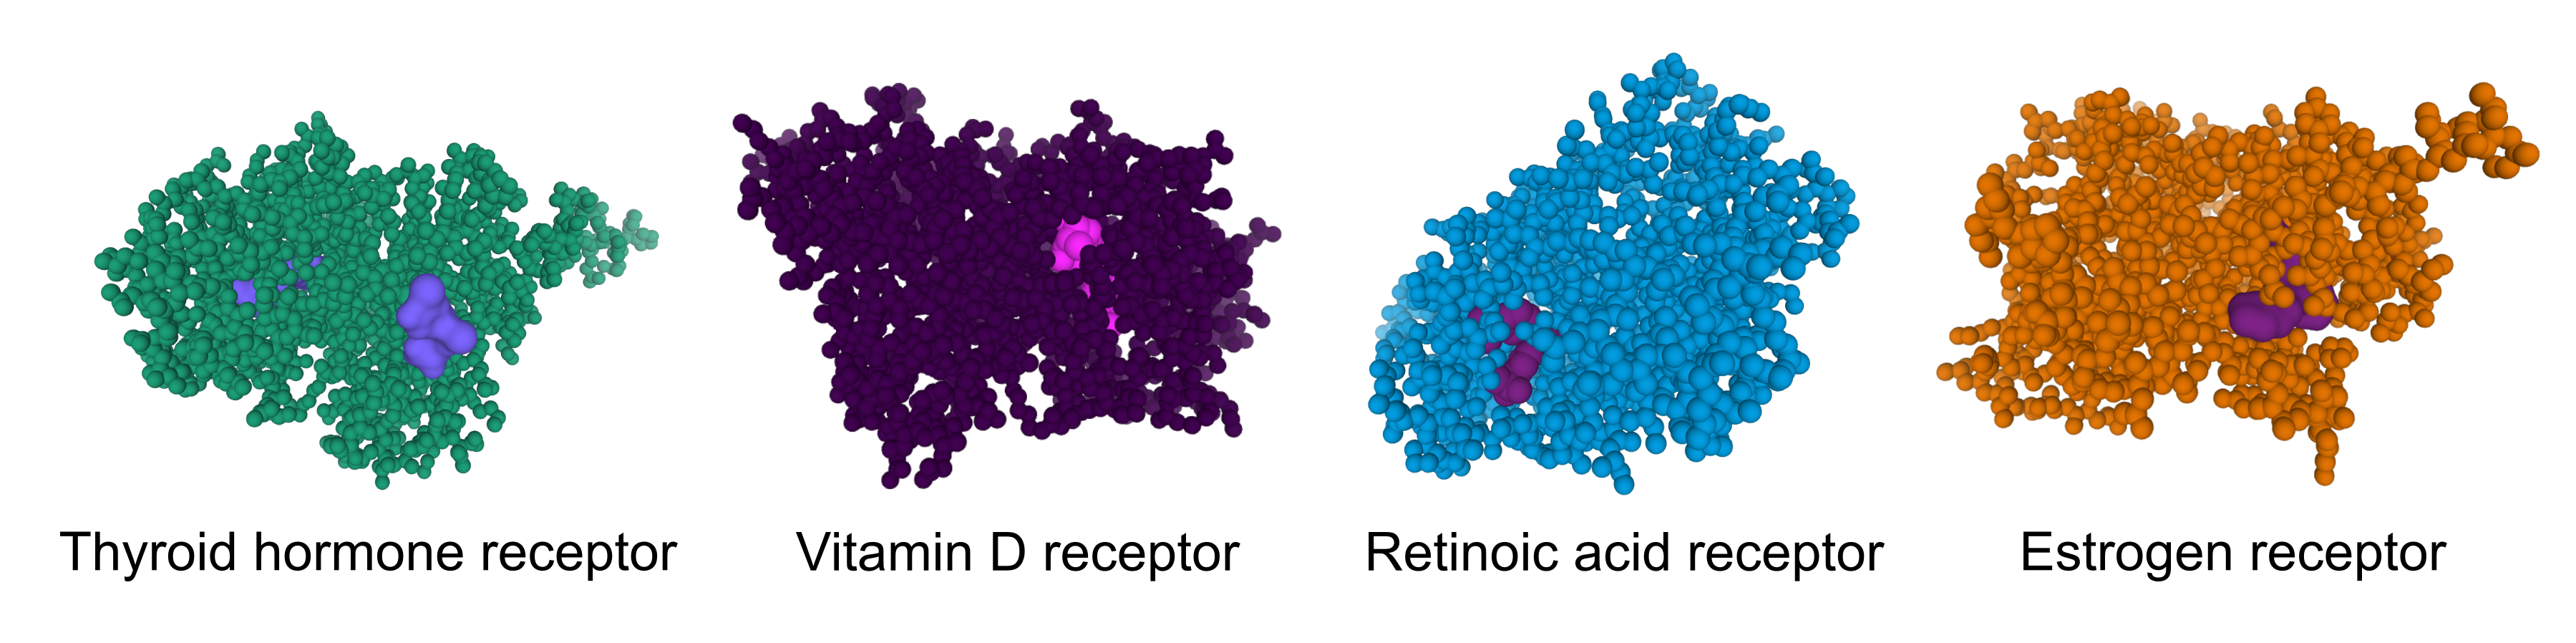 Example of hormone receptors structures